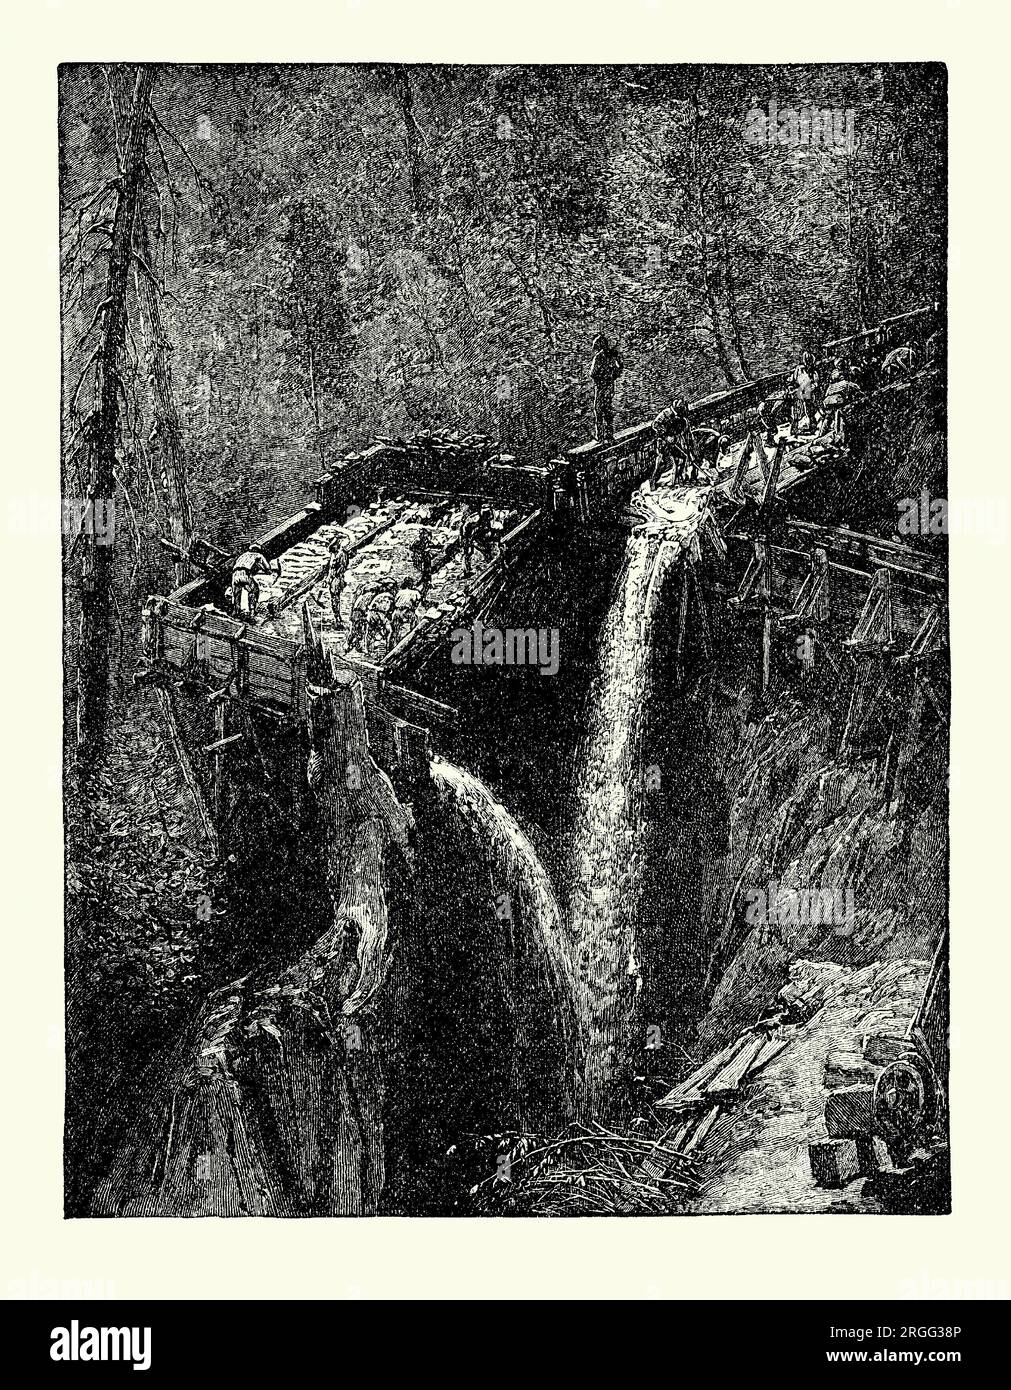 Une vieille gravure d'hommes à la recherche d'or dans les écluses d'eau et les courses en 1848, les premiers temps de la ruée vers l'or californienne dans les contreforts de la Sierra Nevada, Californie, États-Unis. Il est tiré d'un livre d'histoire américain de 1895. L’or a été découvert pour la première fois à Sutter’s Mill (d’après son propriétaire John Sutter), une scierie hydraulique située sur la rive de la rivière South Fork American, dans la Sierra Nevada, en Californie. Un ouvrier qui construisait le moulin, James W. Marshall, y trouva de l'or en 1848. Cette découverte a déclenché la ruée vers l'or de Californie de 1848-1855. Banque D'Images